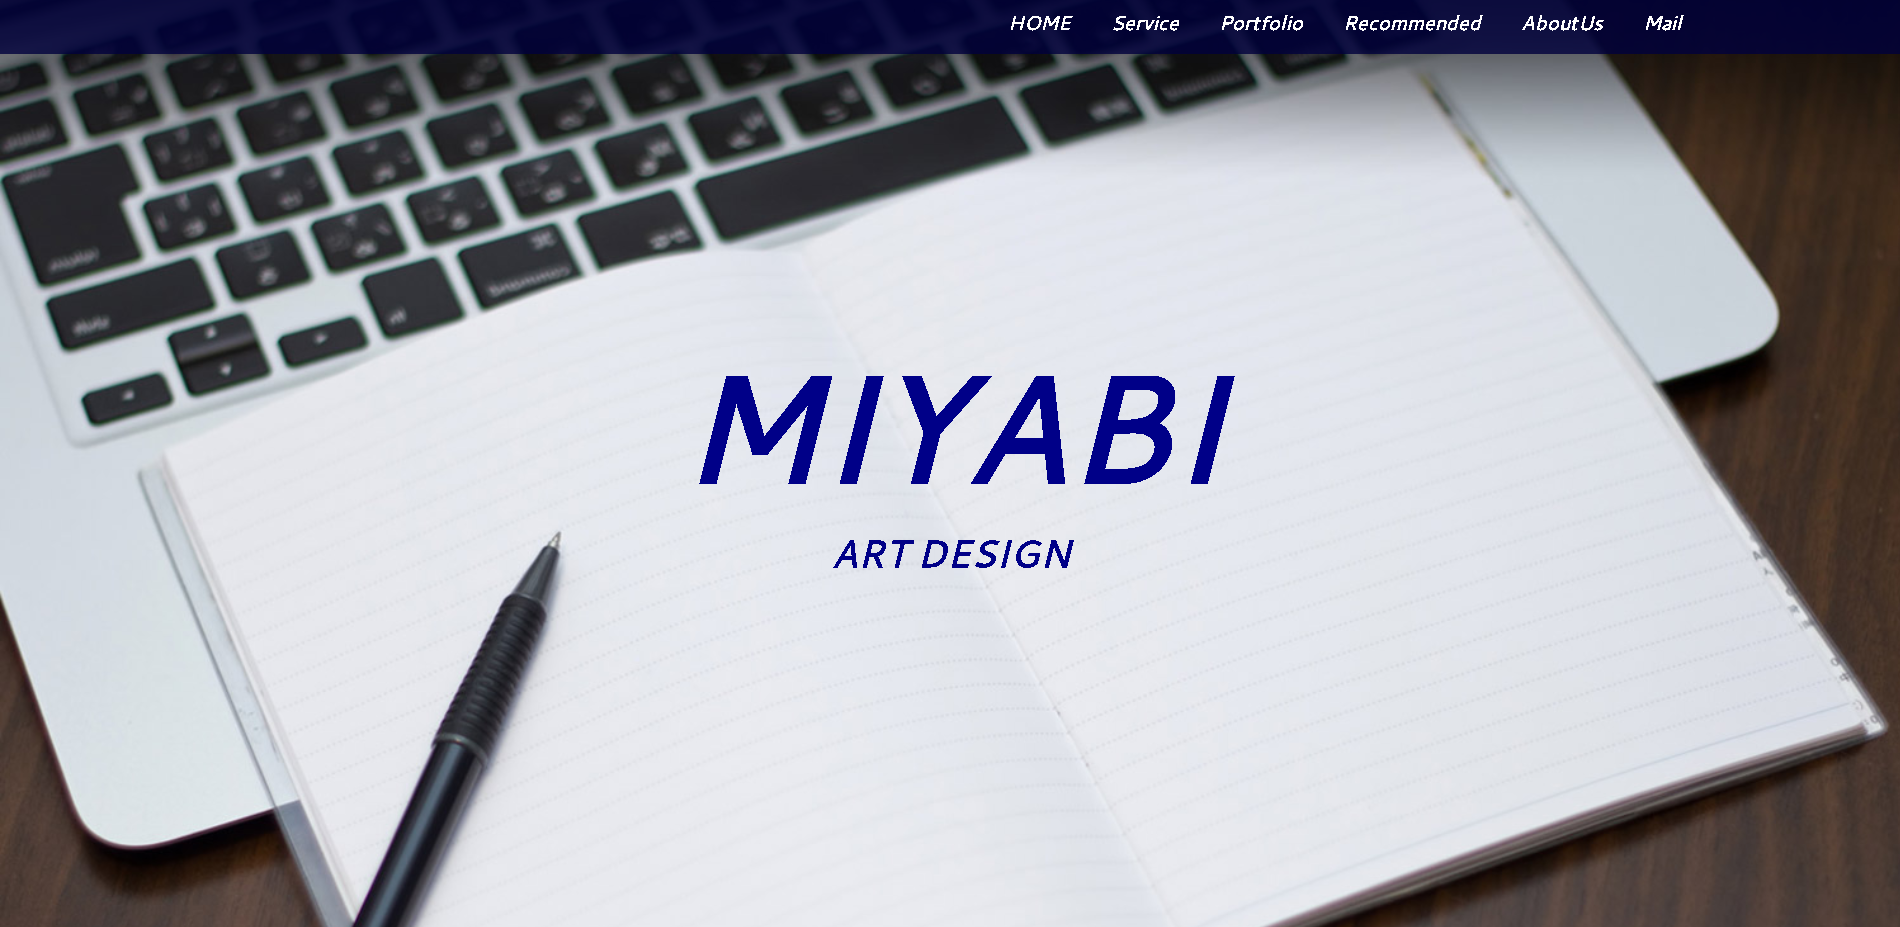 MIYABI ART DESIGN （みやびアートデザイン）のMIYABI ART DESIGN （みやびアートデザイン）サービス